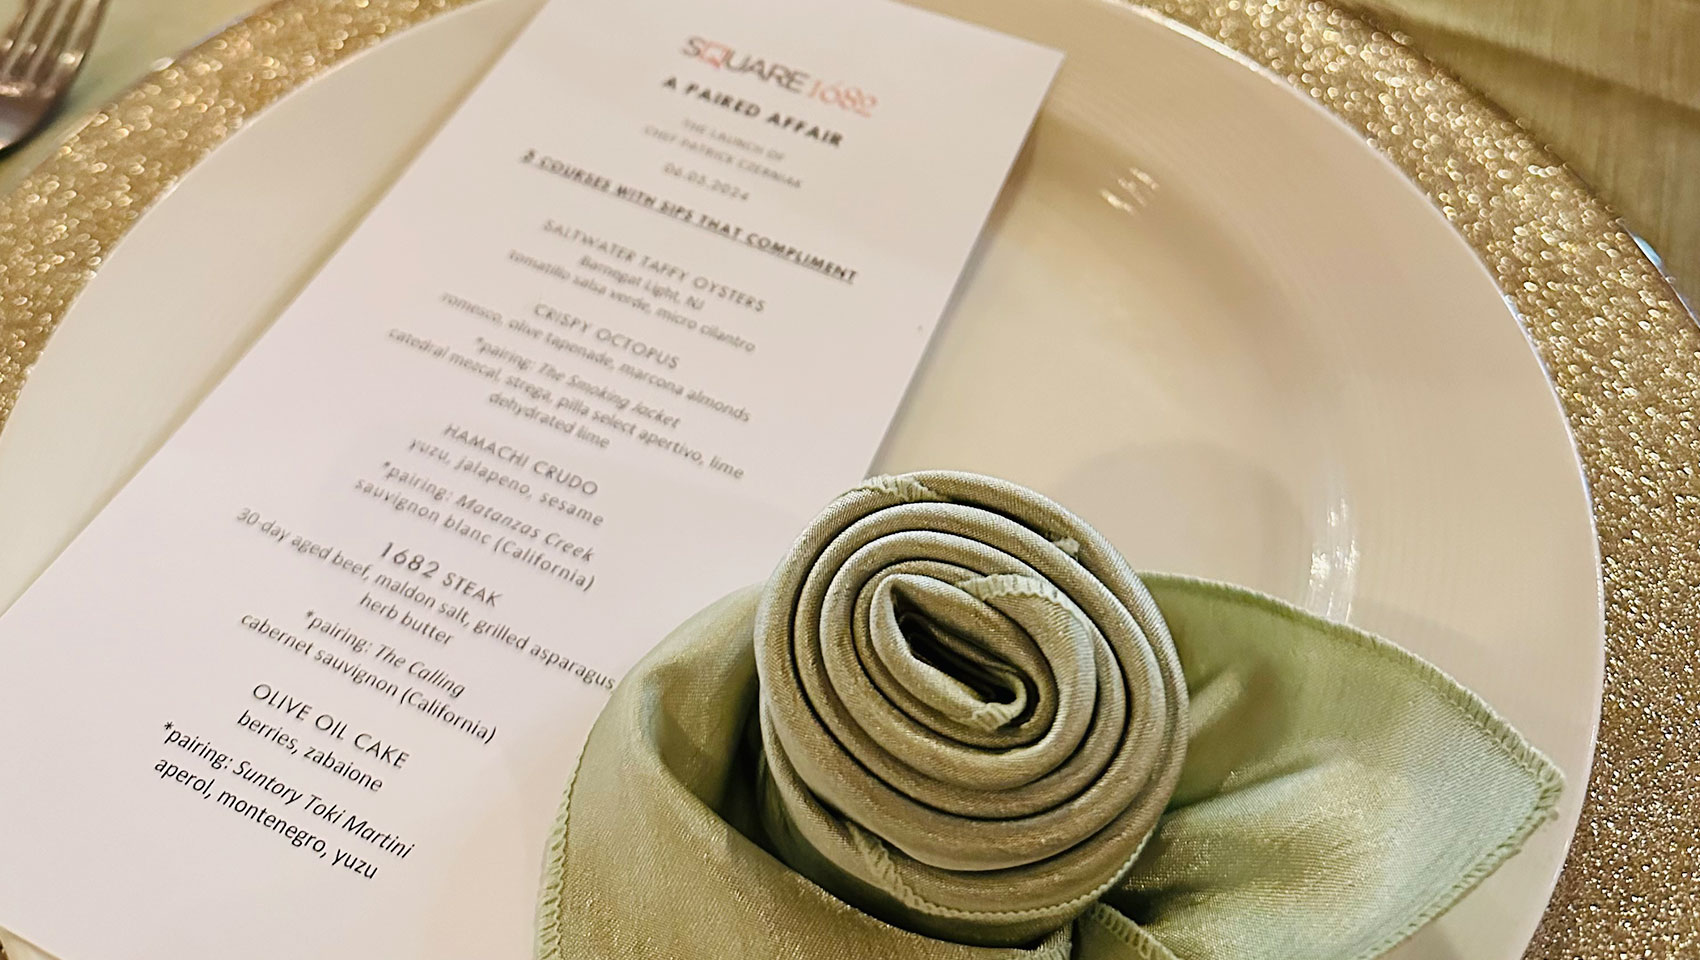 plate, menu, napkin in shape of rose